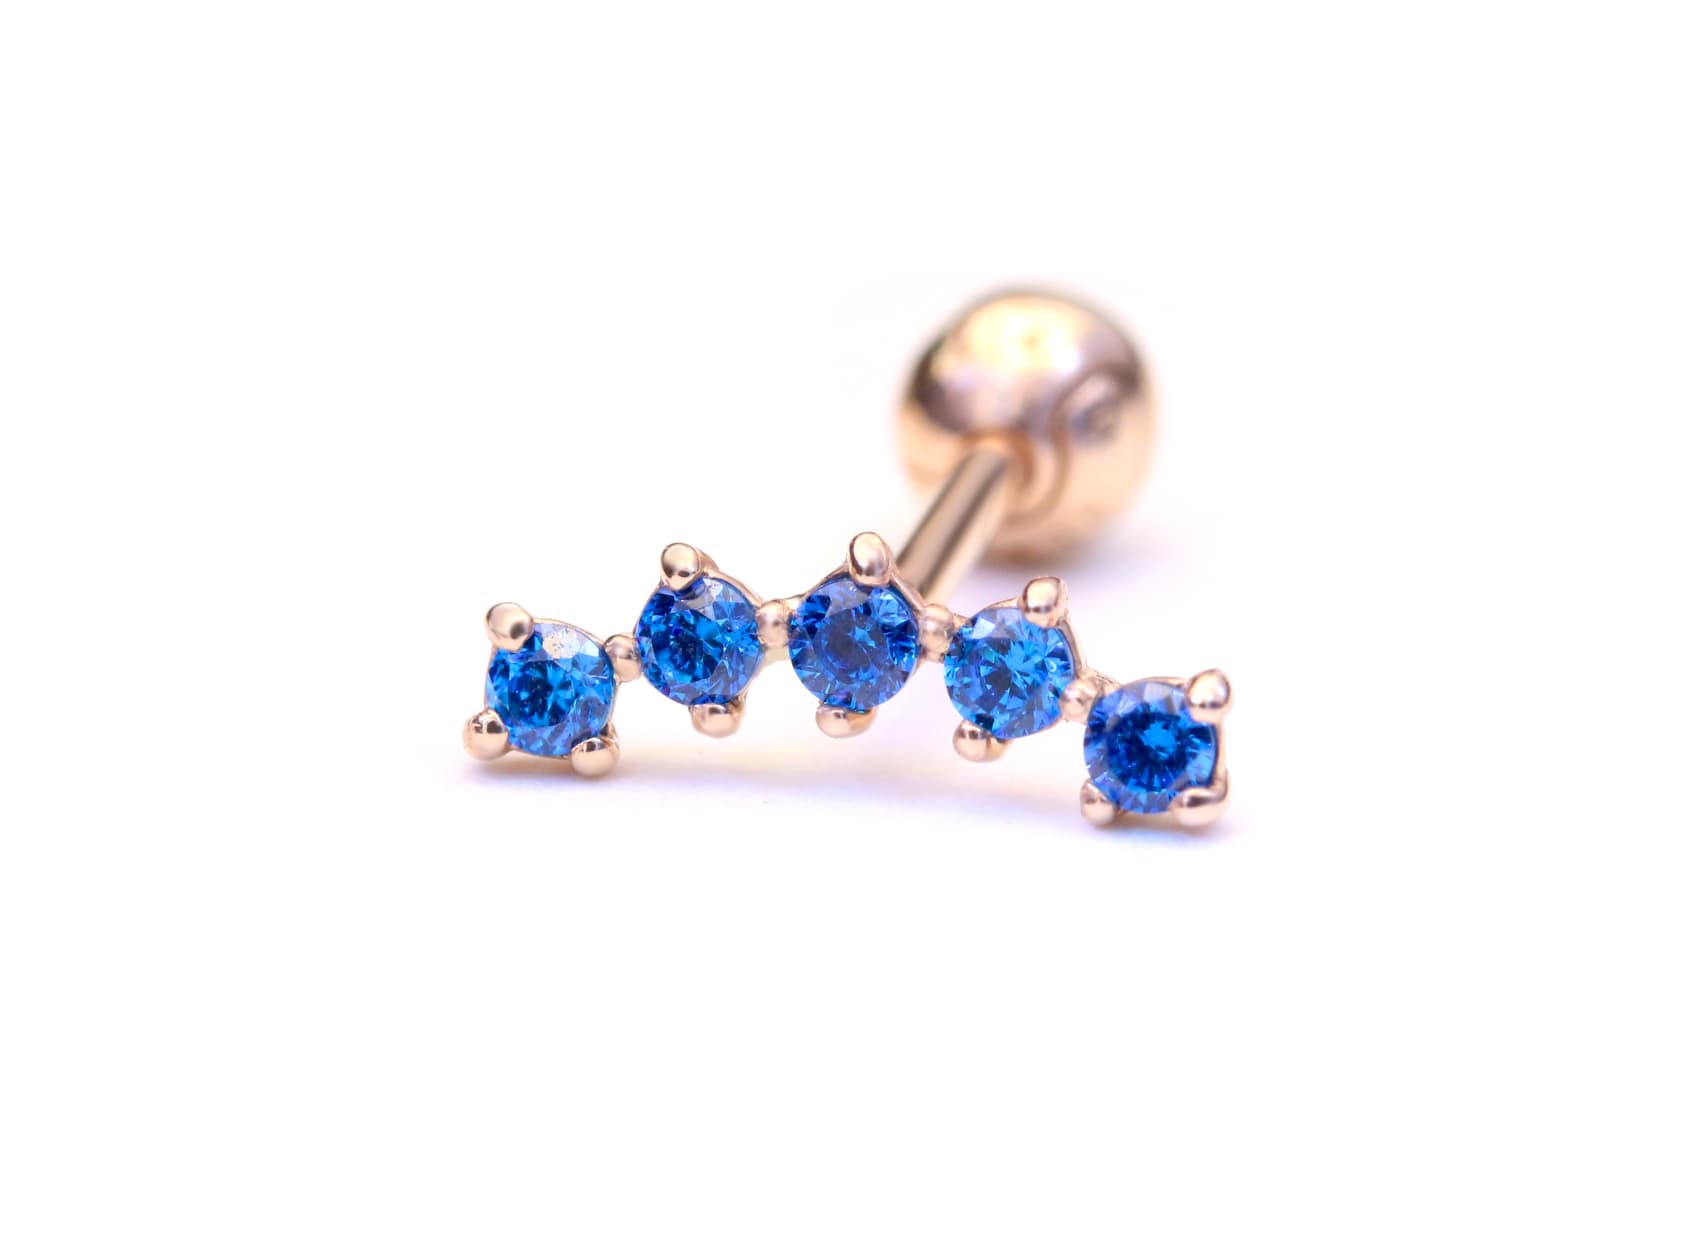 14k gold body jewelry piercing earrings